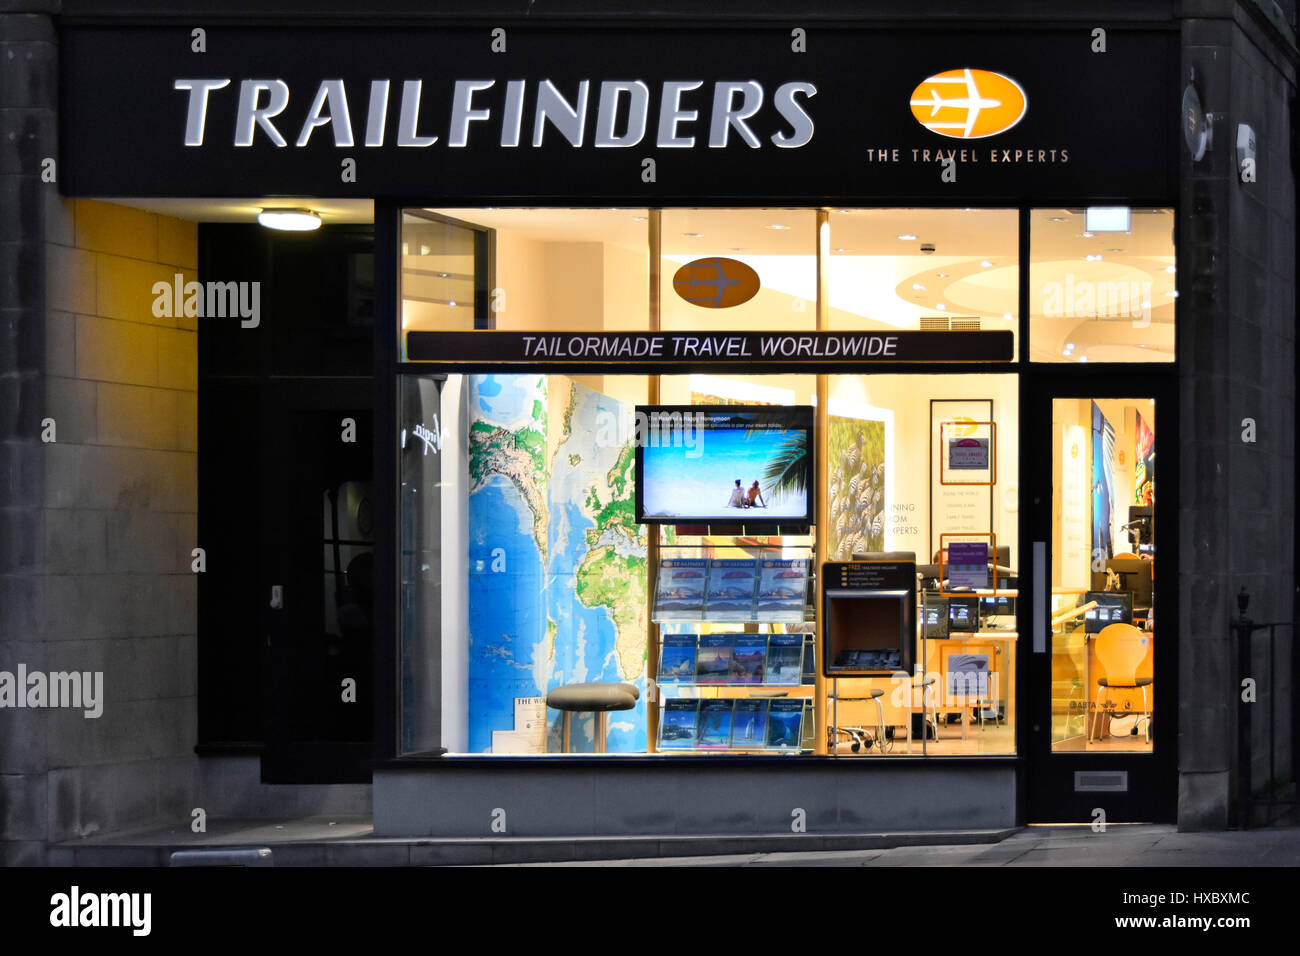 Trailfinders schottischen Reisebüro inneren Blick von außen zu öffnen & shop Frontscheibe am Nachmittag Spätwinter Nachtbeleuchtung Edinburgh Schottland UK Stockfoto